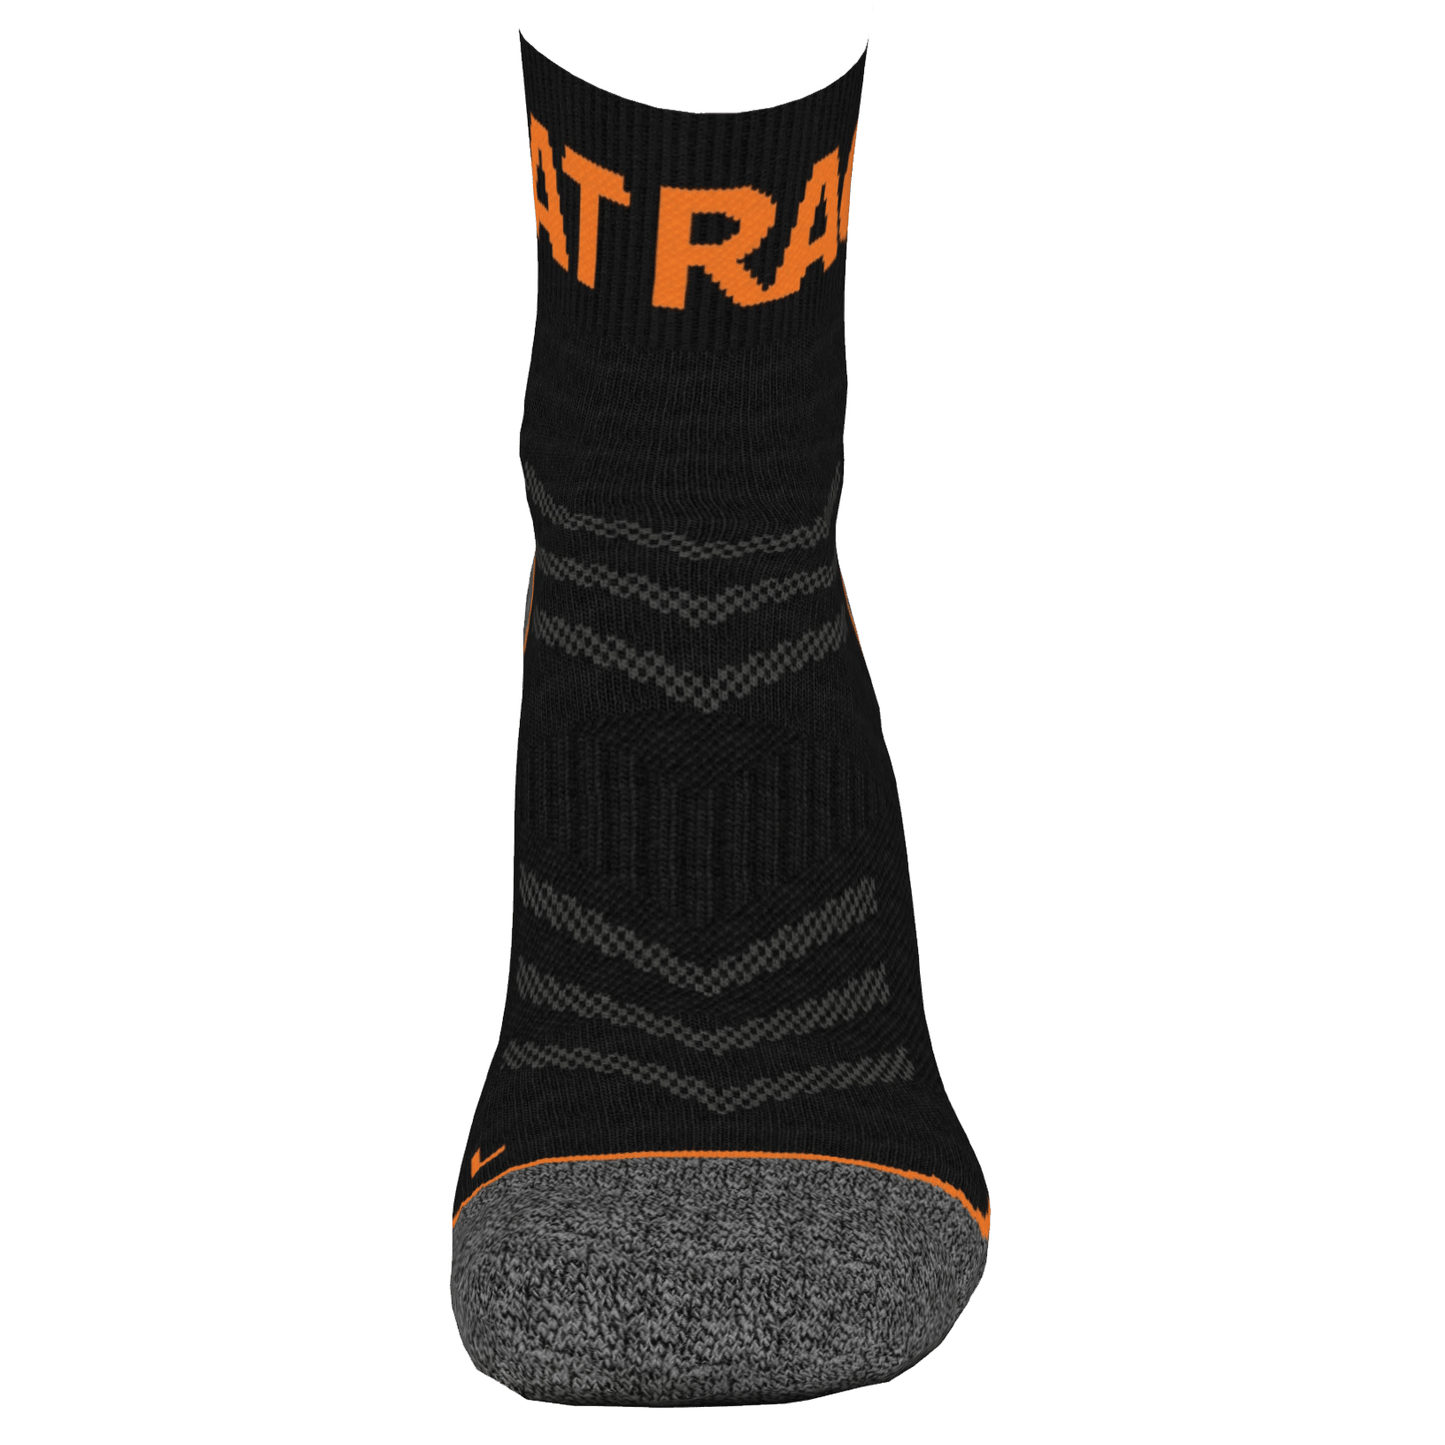 Merino Sock 5 Pack - Vibrant Orange